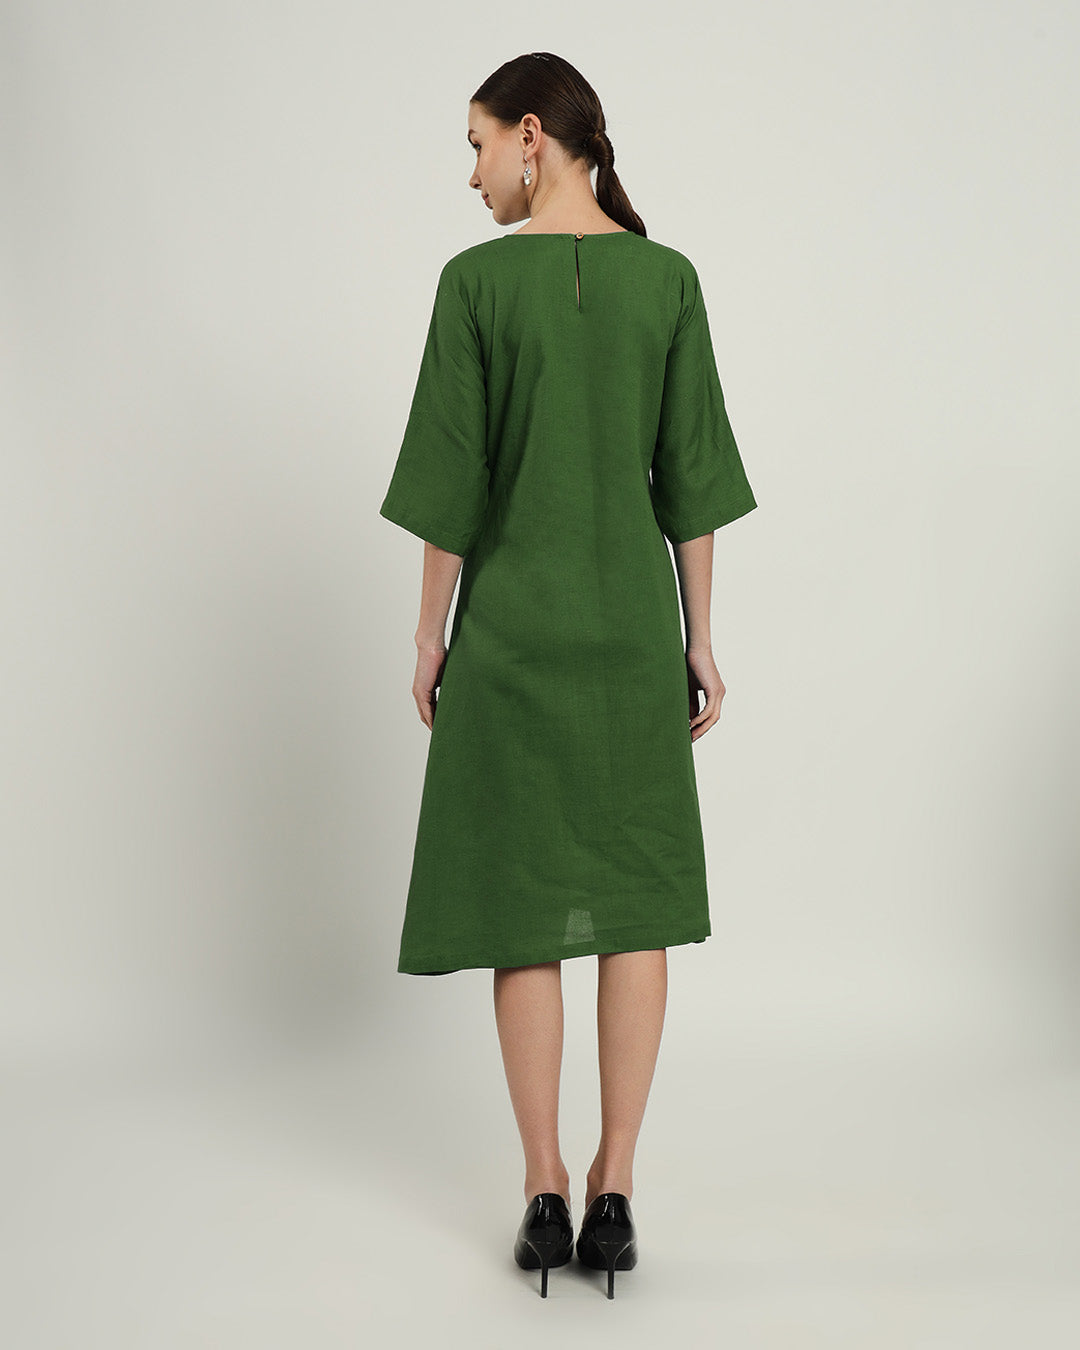 The Monrovia Emerald Dress